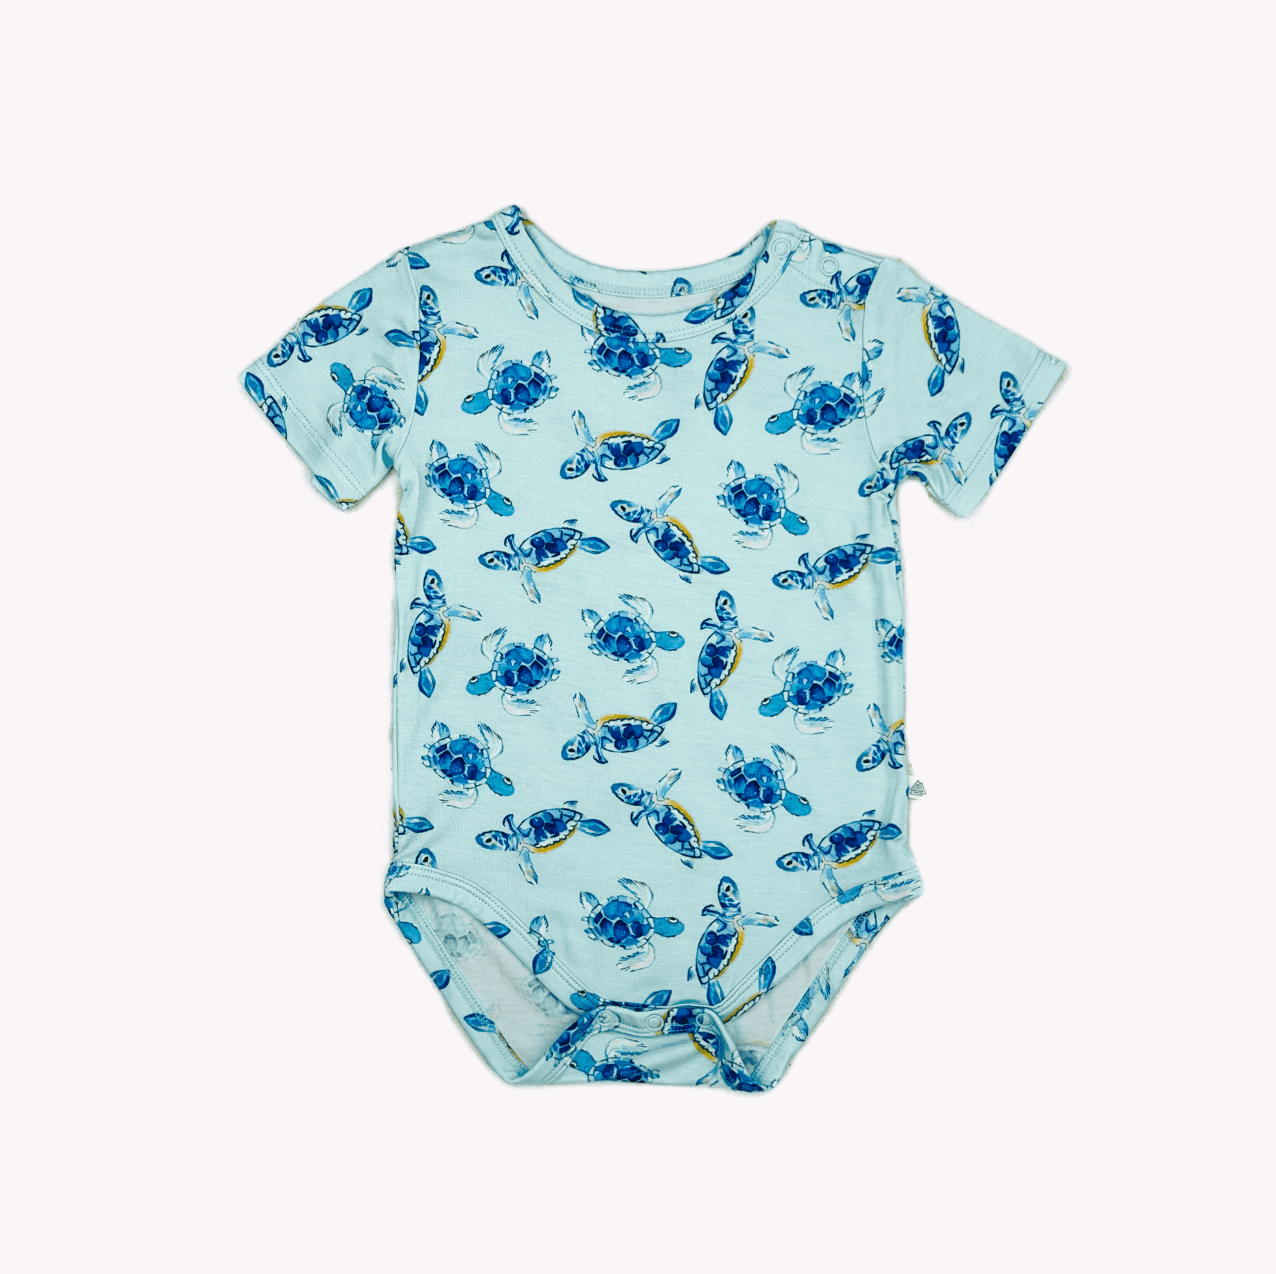 Baby Sea Turtles Short Sleeve Bodysuit